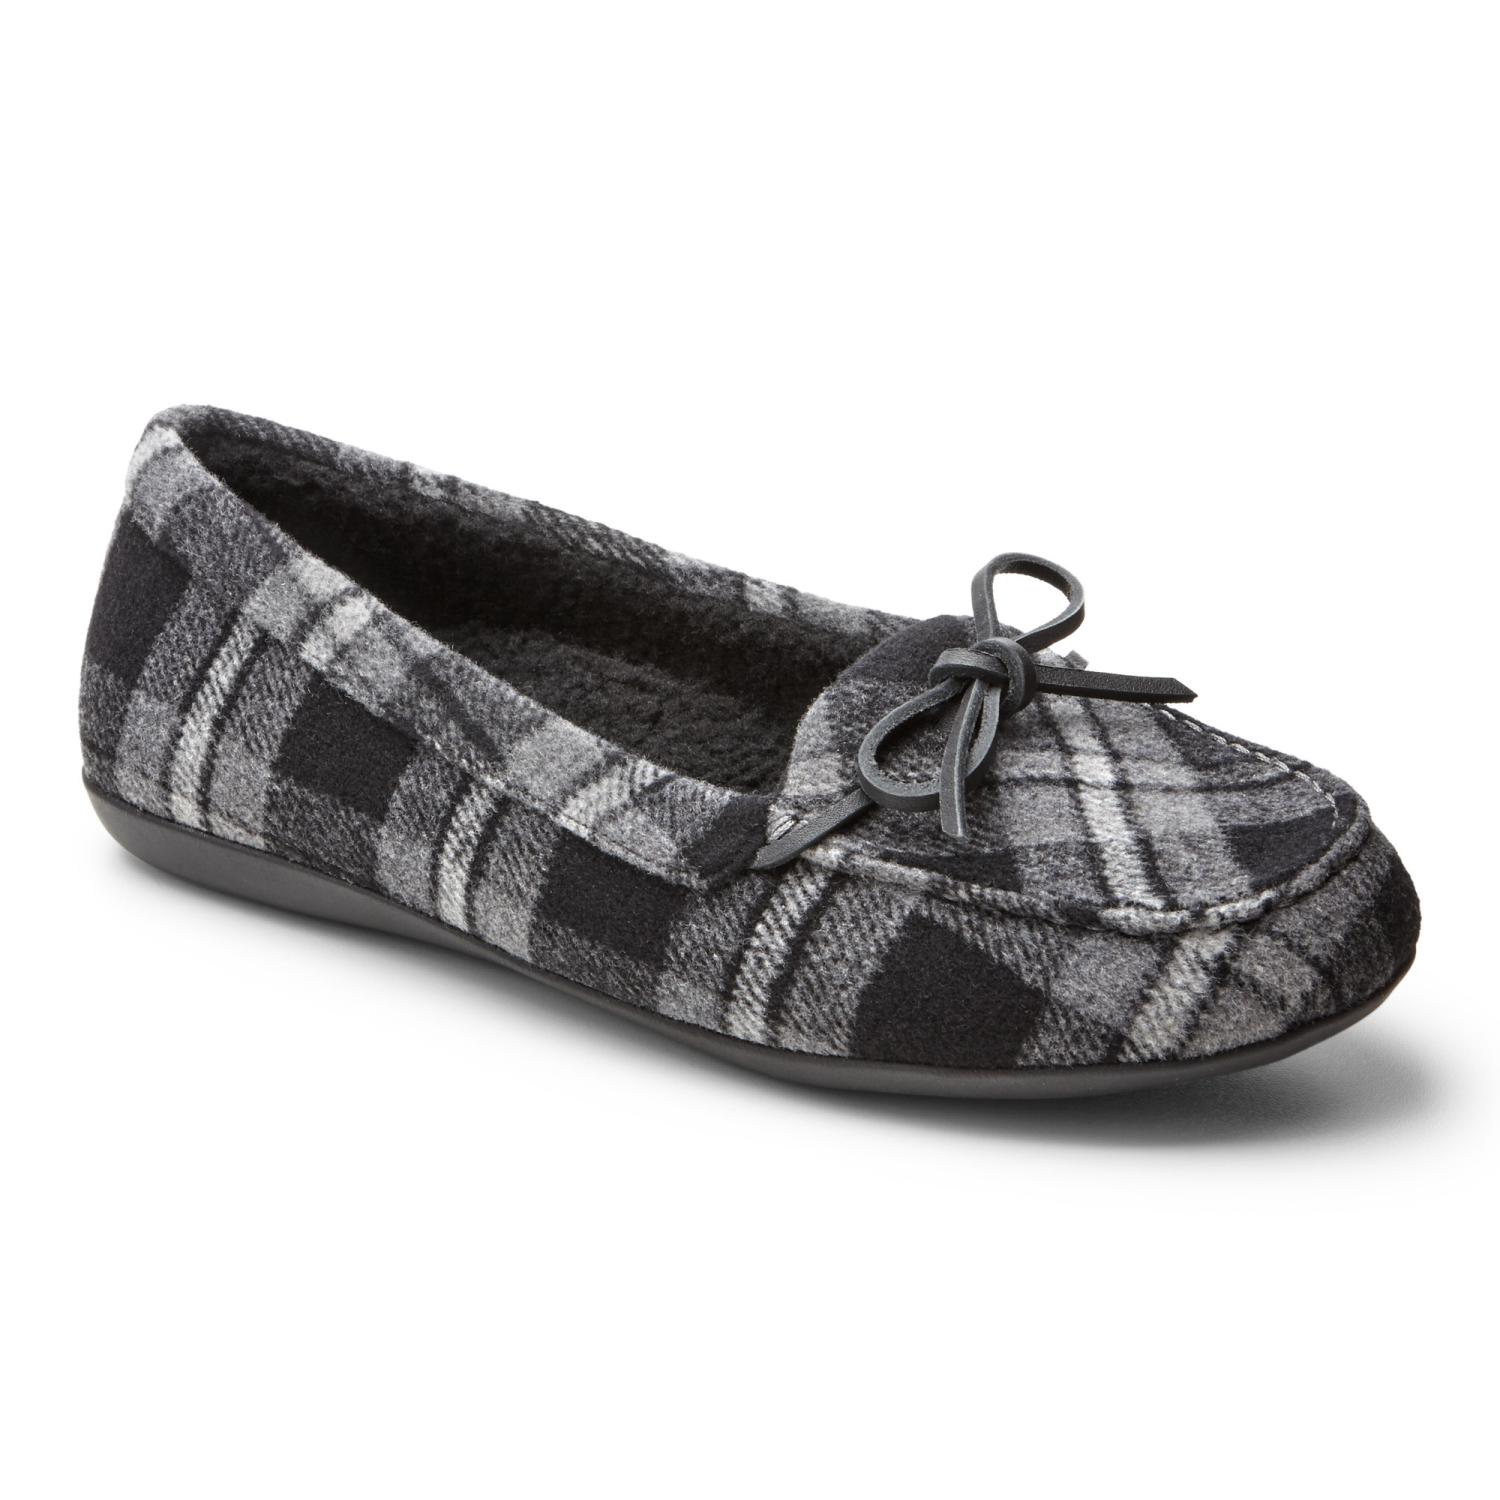 vionic plaid slippers